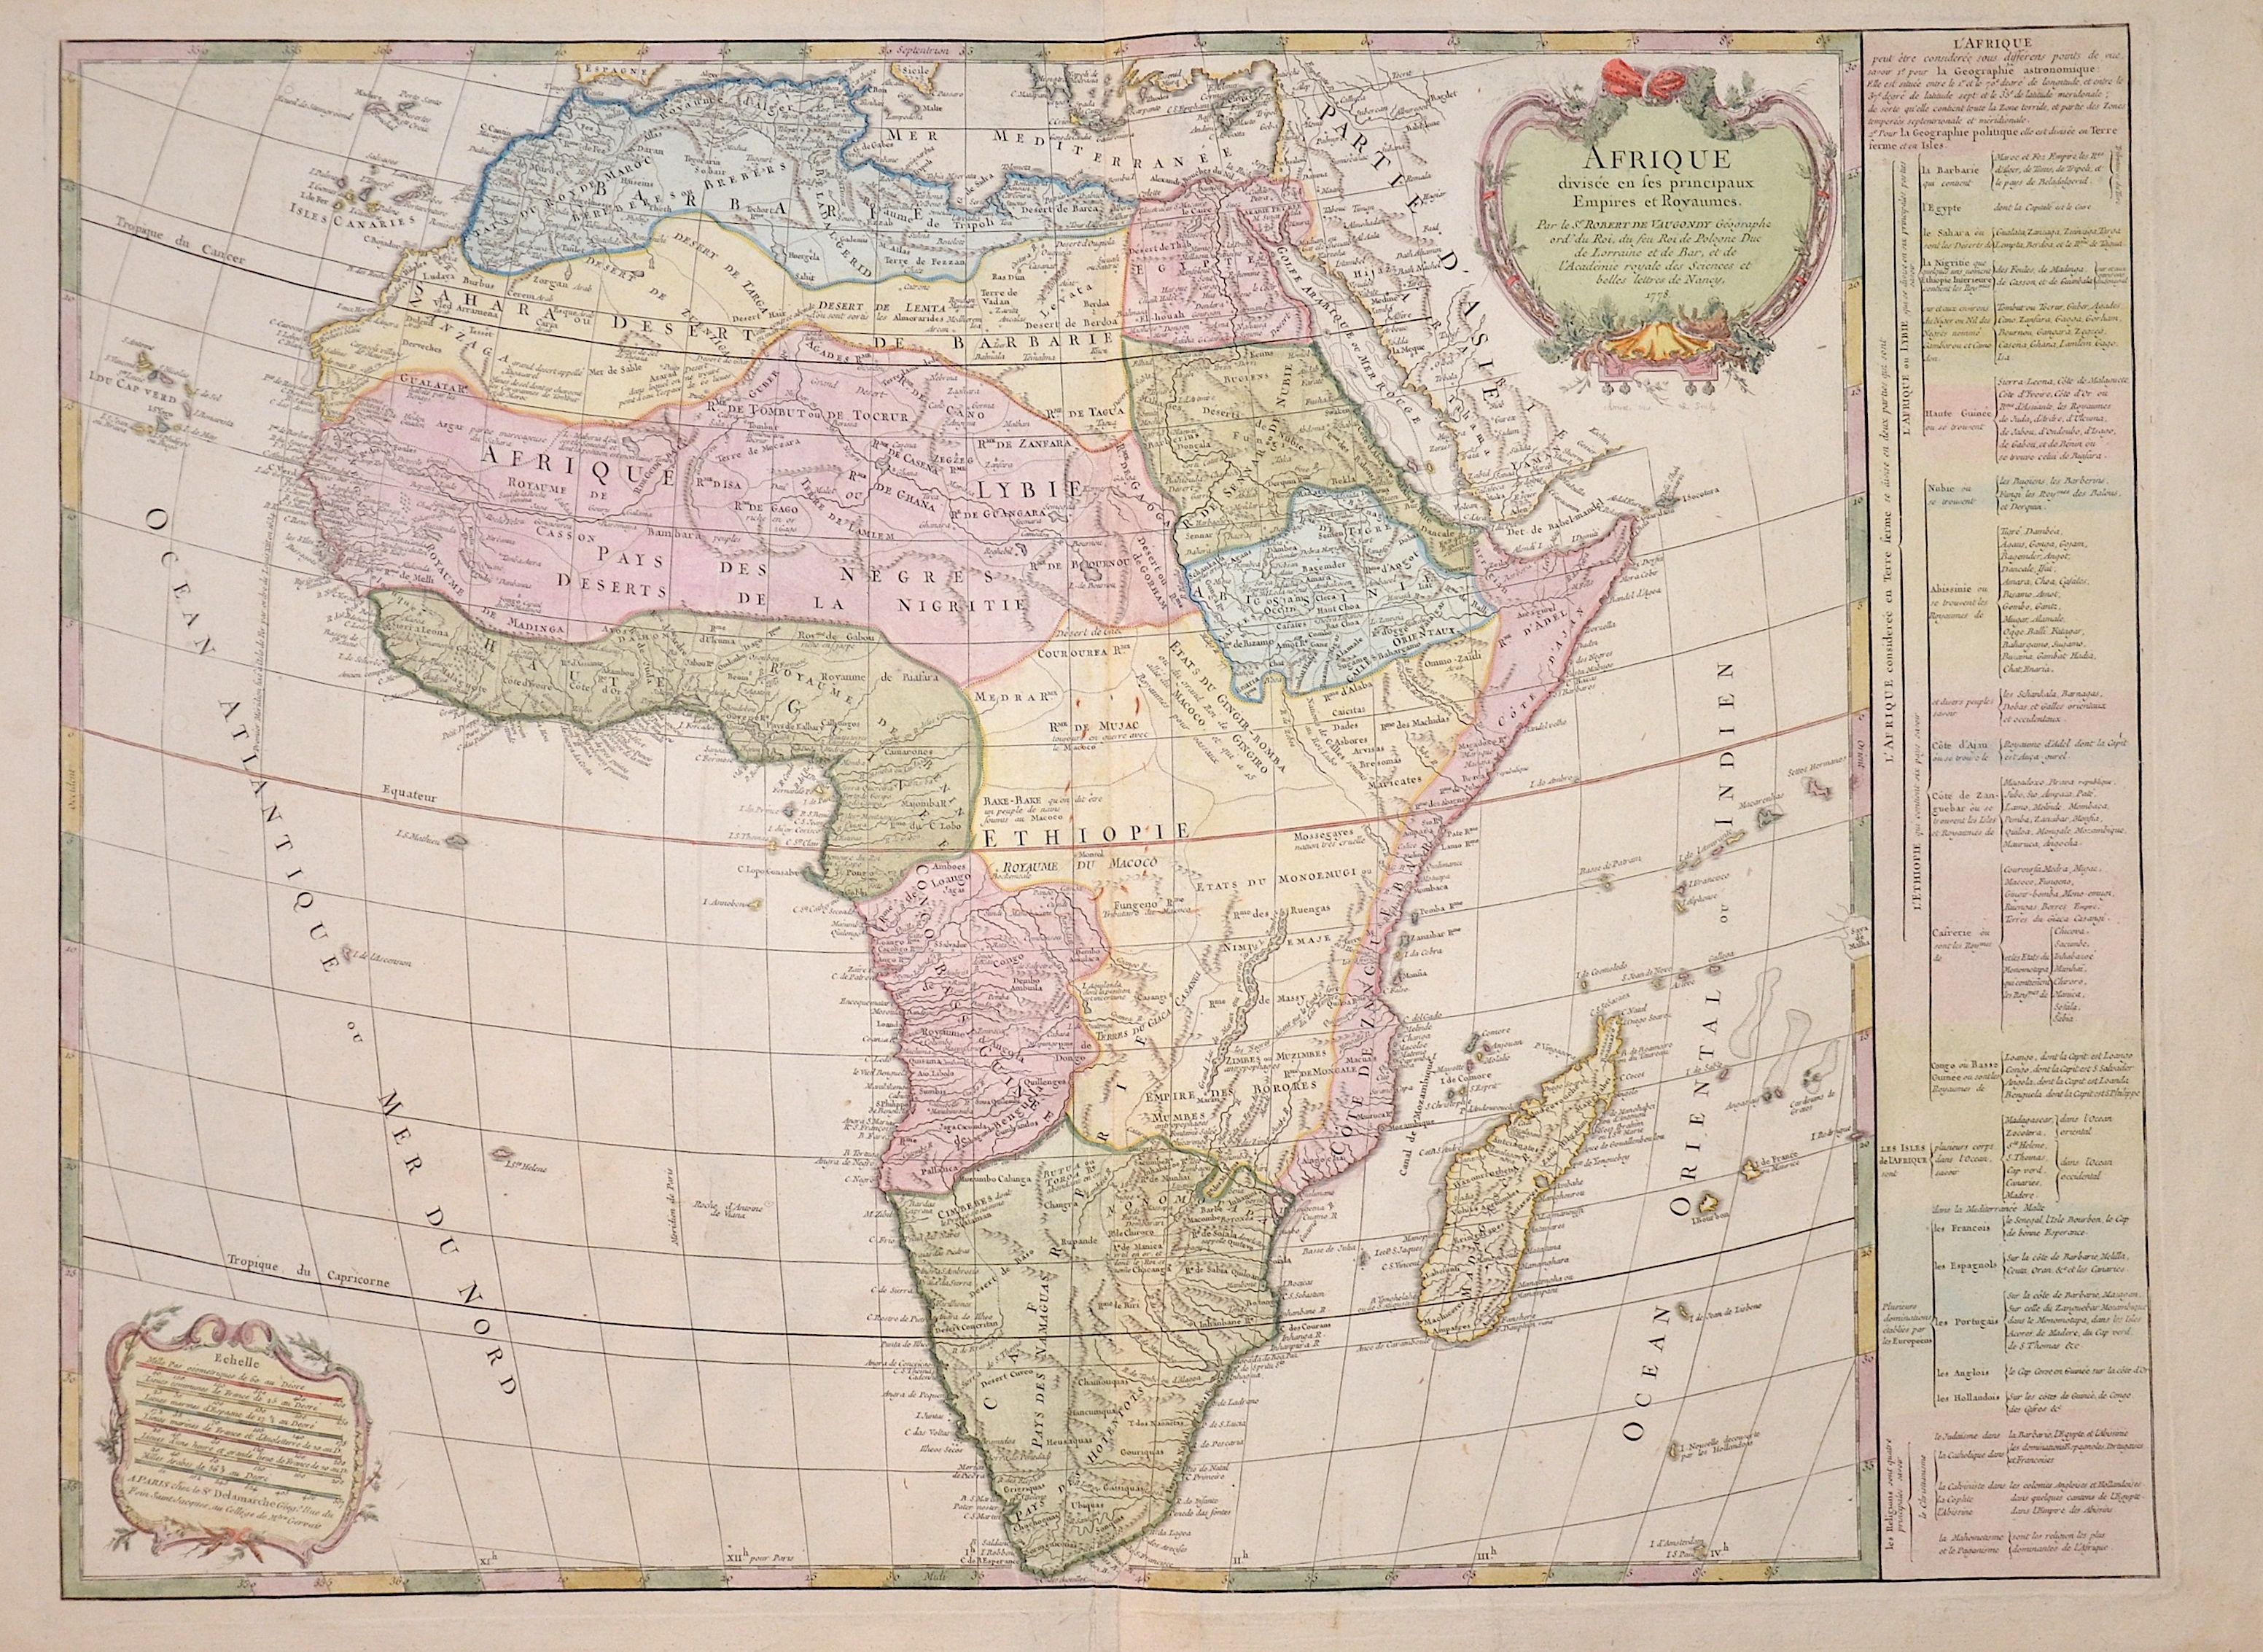 Vaugondy,de Robert Afrique divisee en ses principaux Empires et Royaumes.